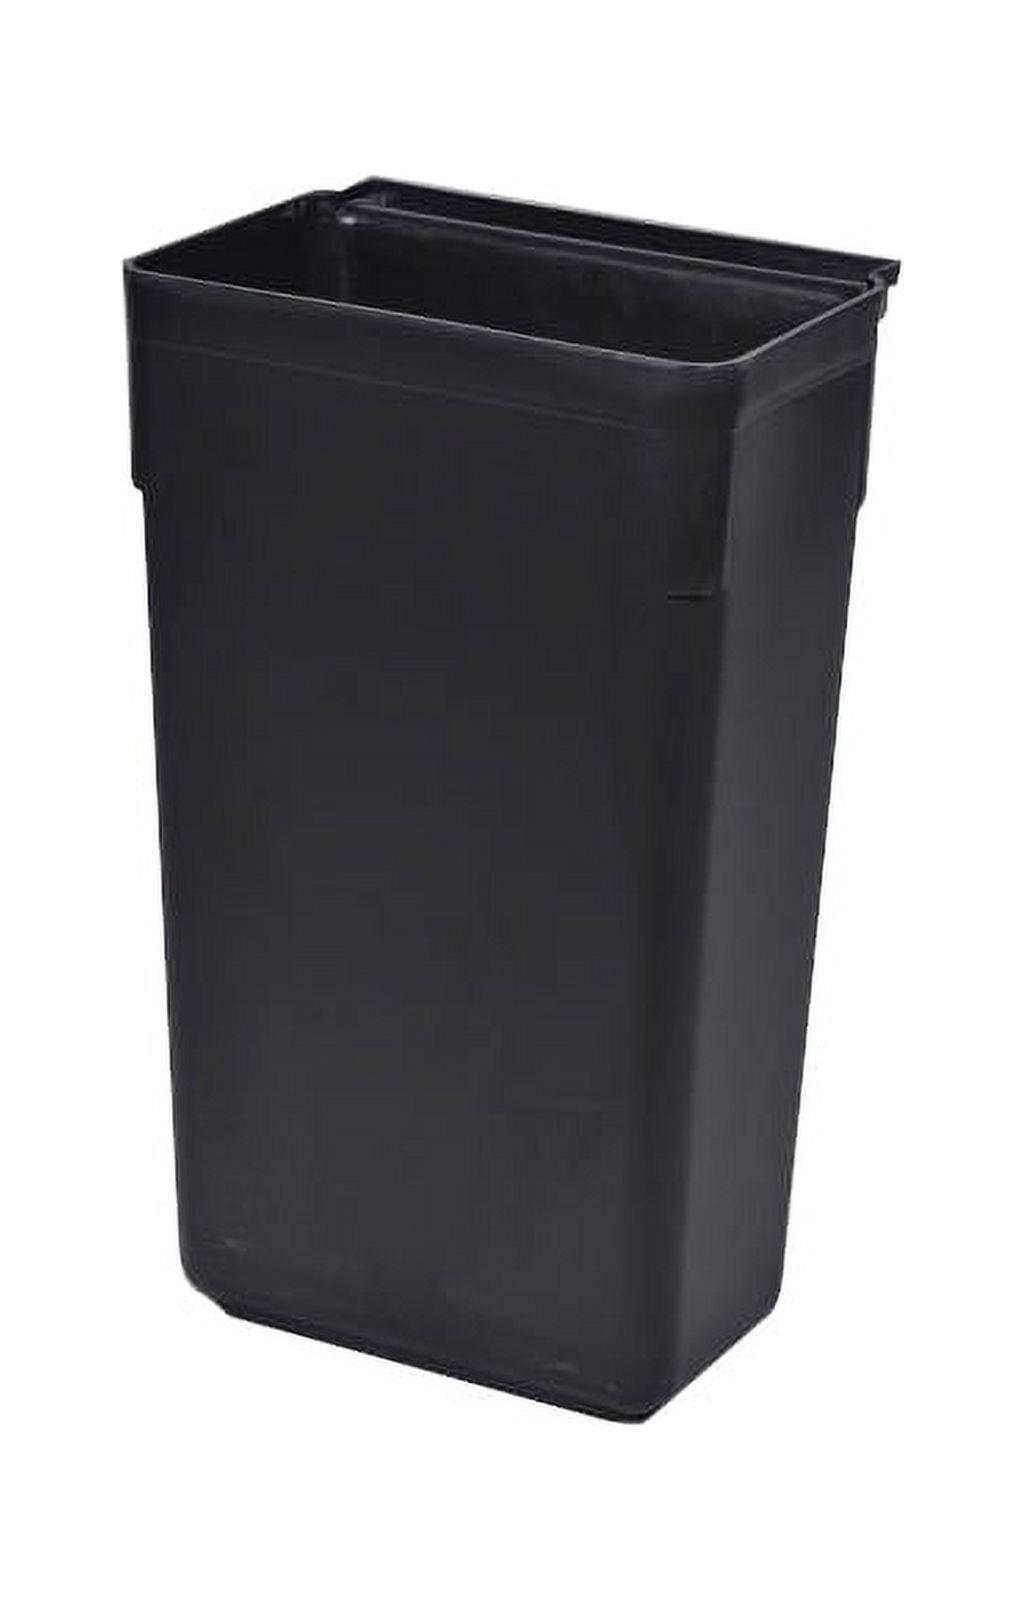 RW Clean 22 inch x 13 inch Waste Basket, 1 Slim Trash Bin - Attachable, for Office, Black Plastic Trash Can, Fits Rolling Utility Cart, Heavy Duty - R